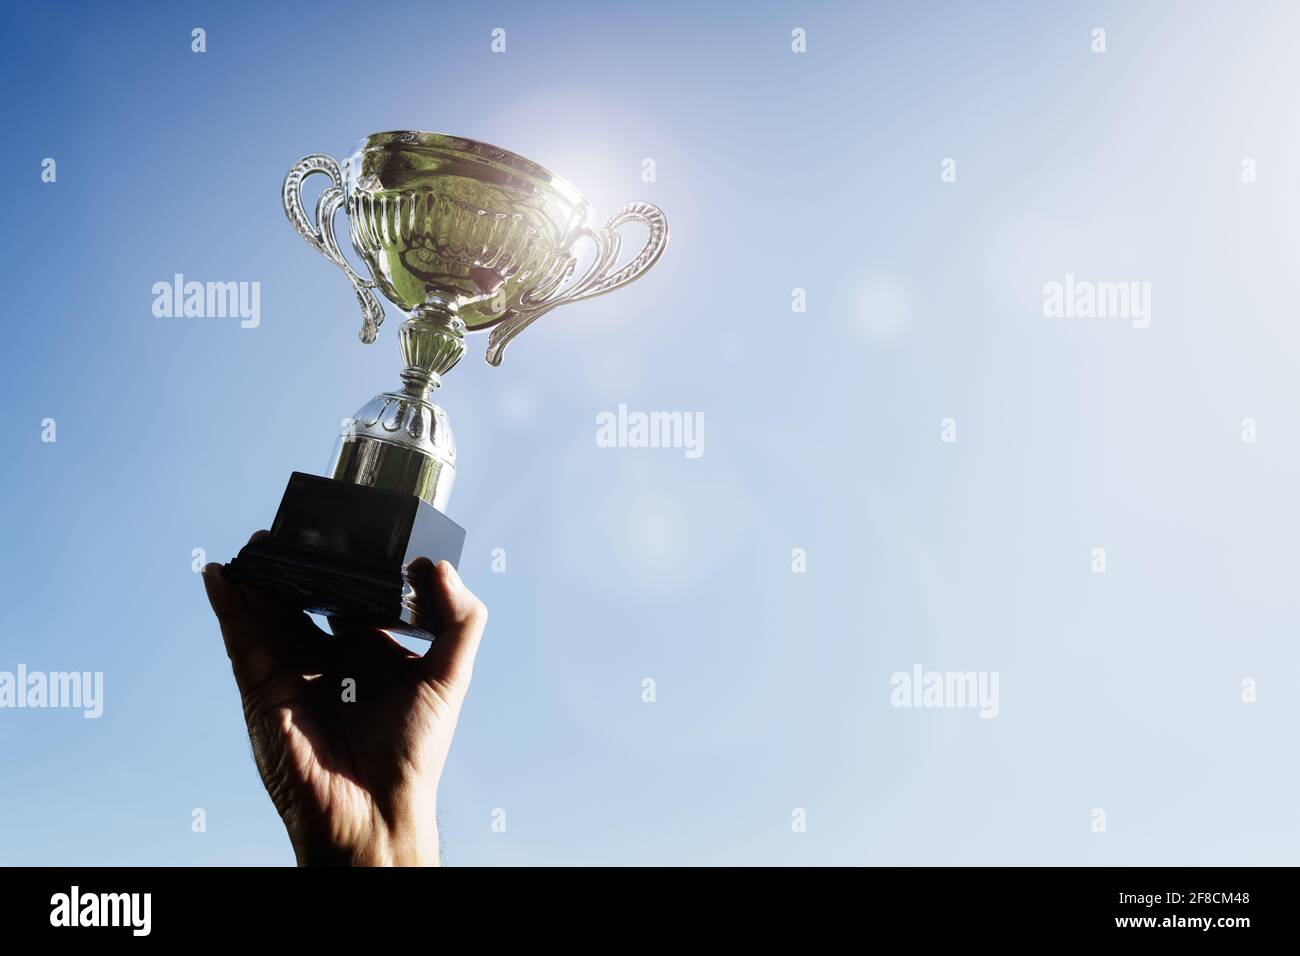 Celebrando con el trofeo para el éxito o el primer lugar campeonato deportivo Foto de stock